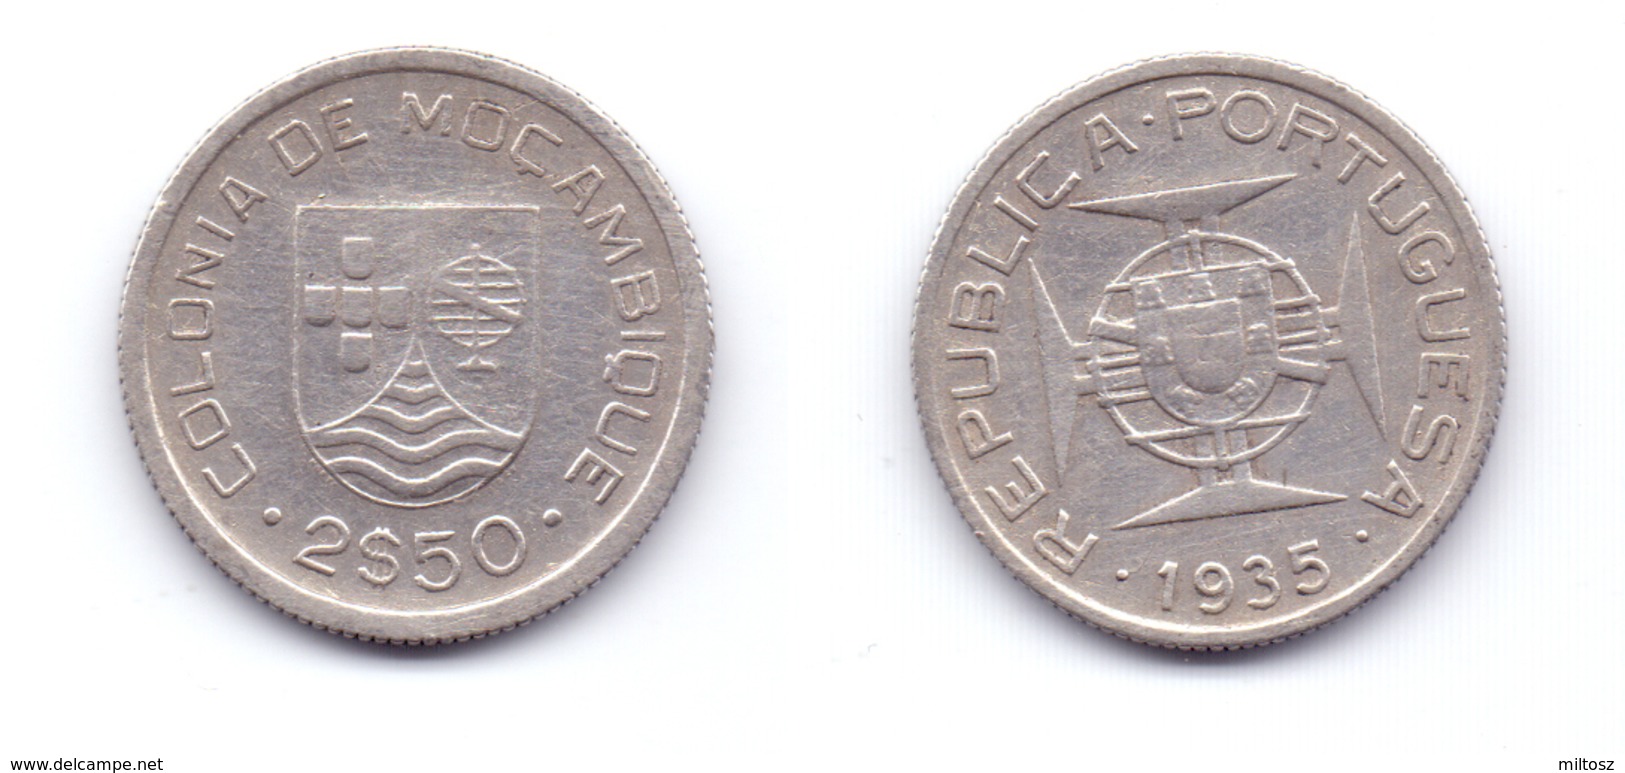 Mozambique 2.50 Escudos 1935 - Mozambique